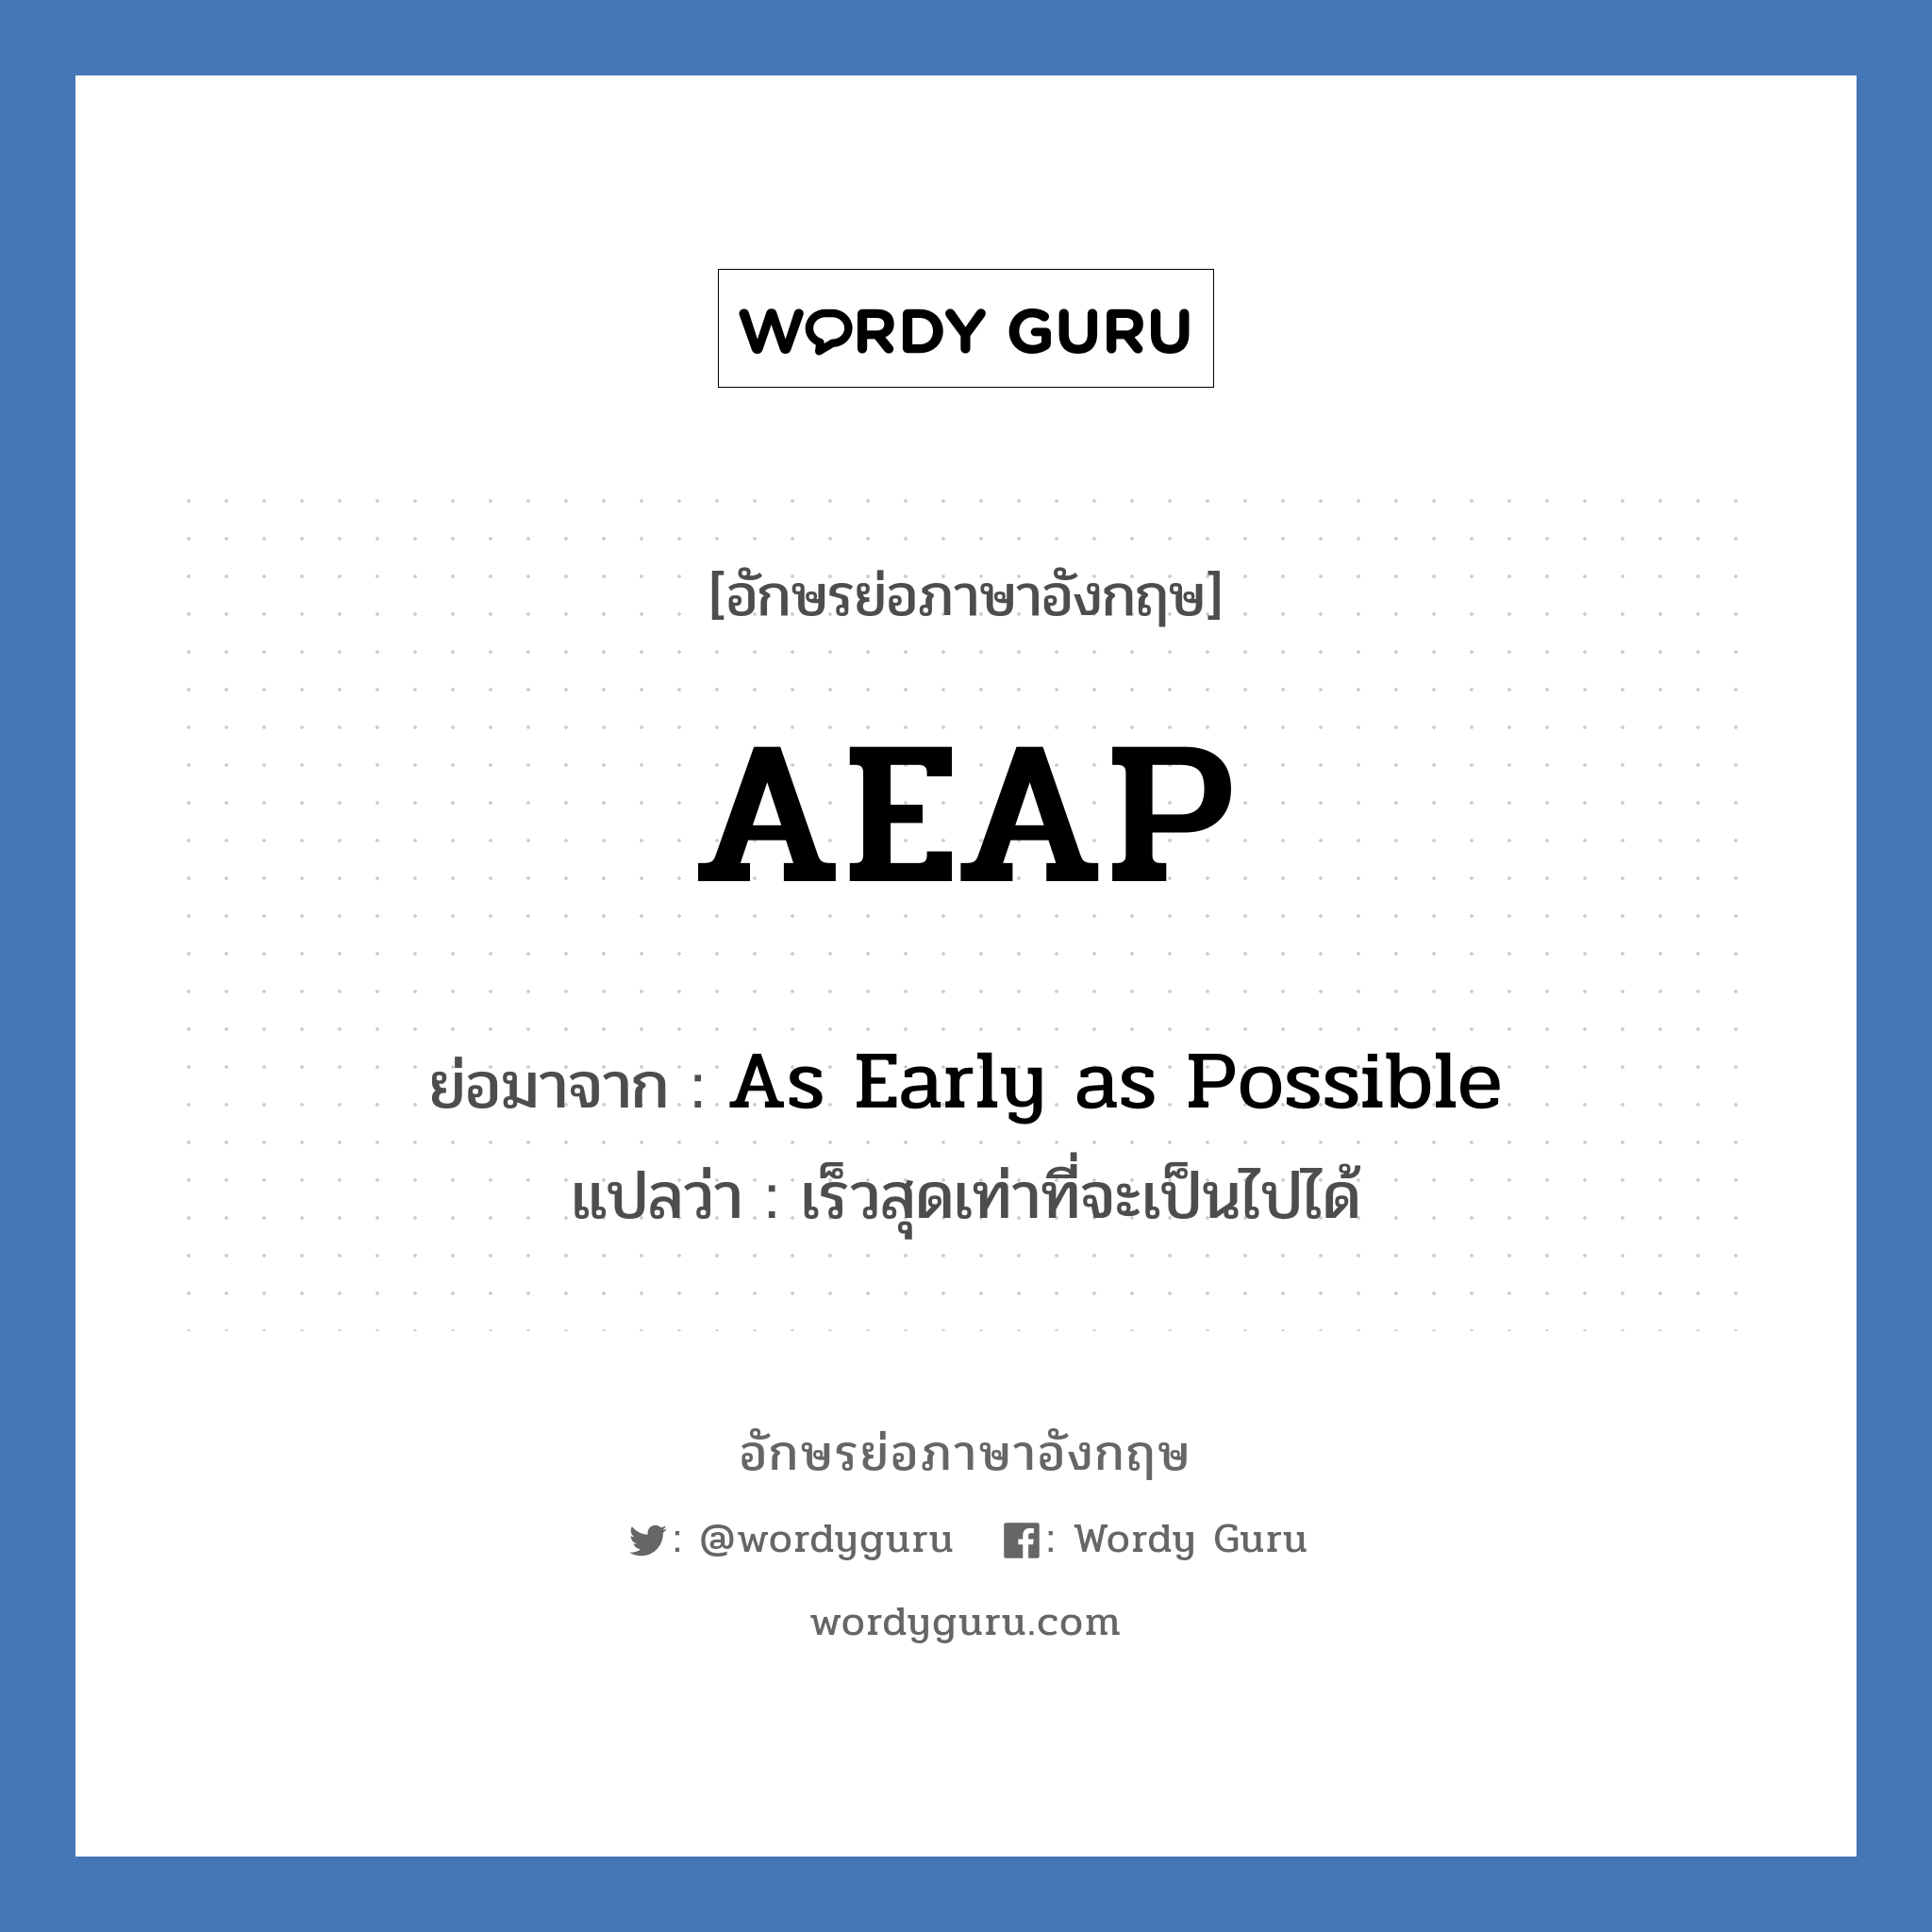 As Early as Possible คำย่อคือ? แปลว่า?, อักษรย่อภาษาอังกฤษ As Early as Possible ย่อมาจาก AEAP แปลว่า เร็วสุดเท่าที่จะเป็นไปได้